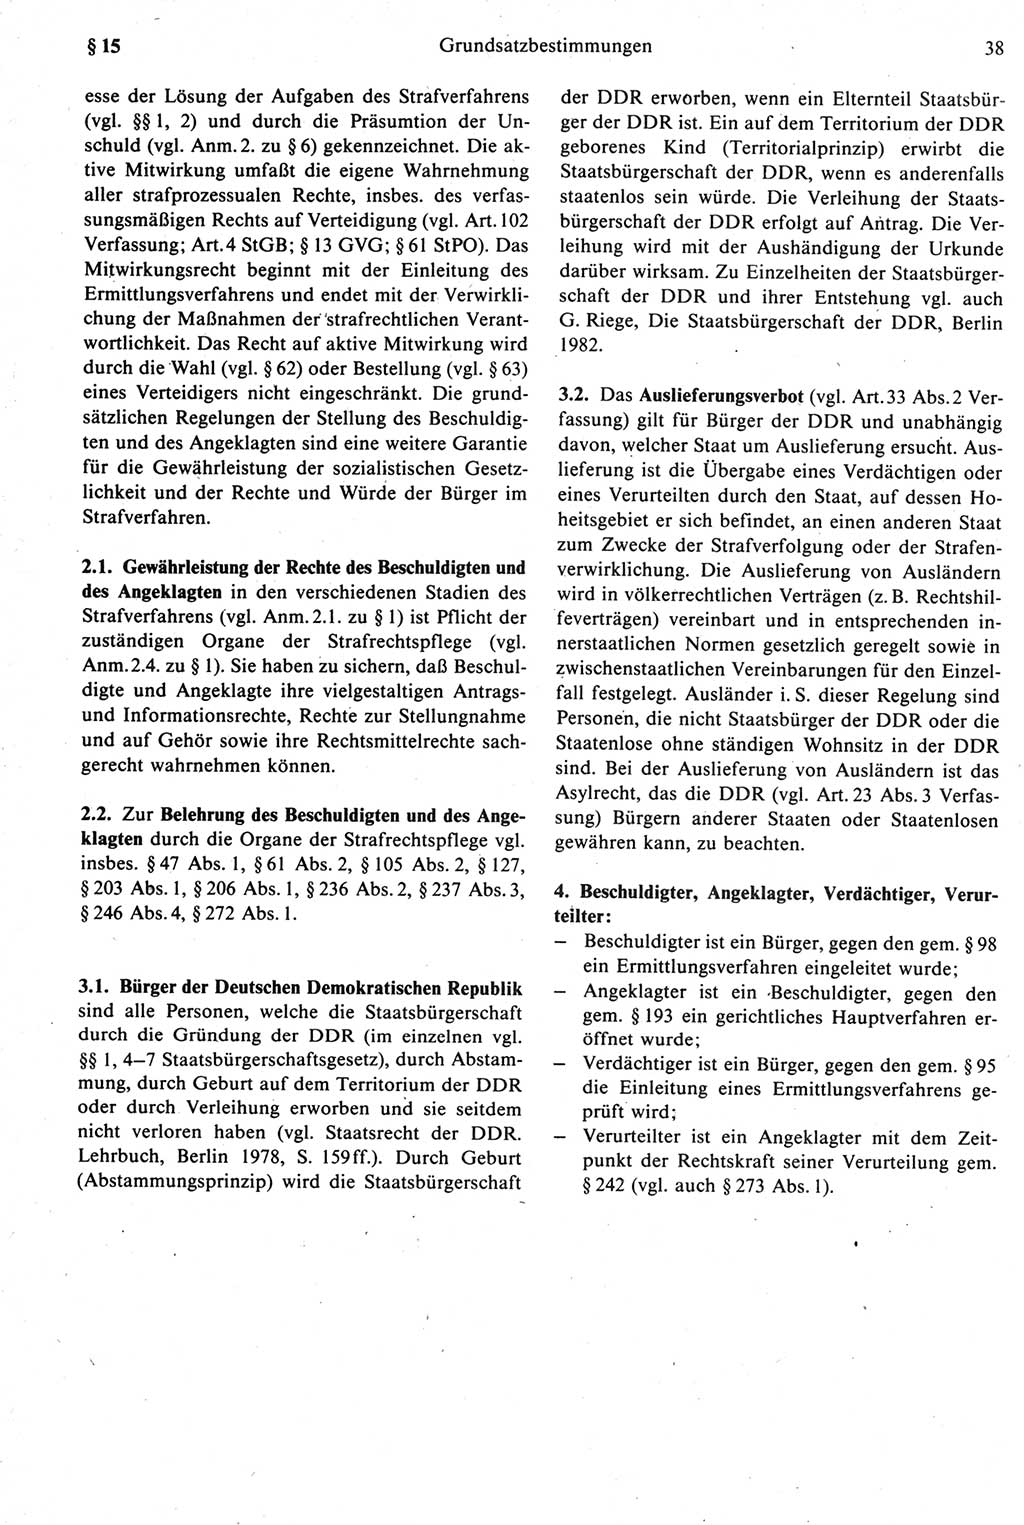 Strafprozeßrecht der DDR [Deutsche Demokratische Republik], Kommentar zur Strafprozeßordnung (StPO) 1987, Seite 38 (Strafprozeßr. DDR Komm. StPO 1987, S. 38)